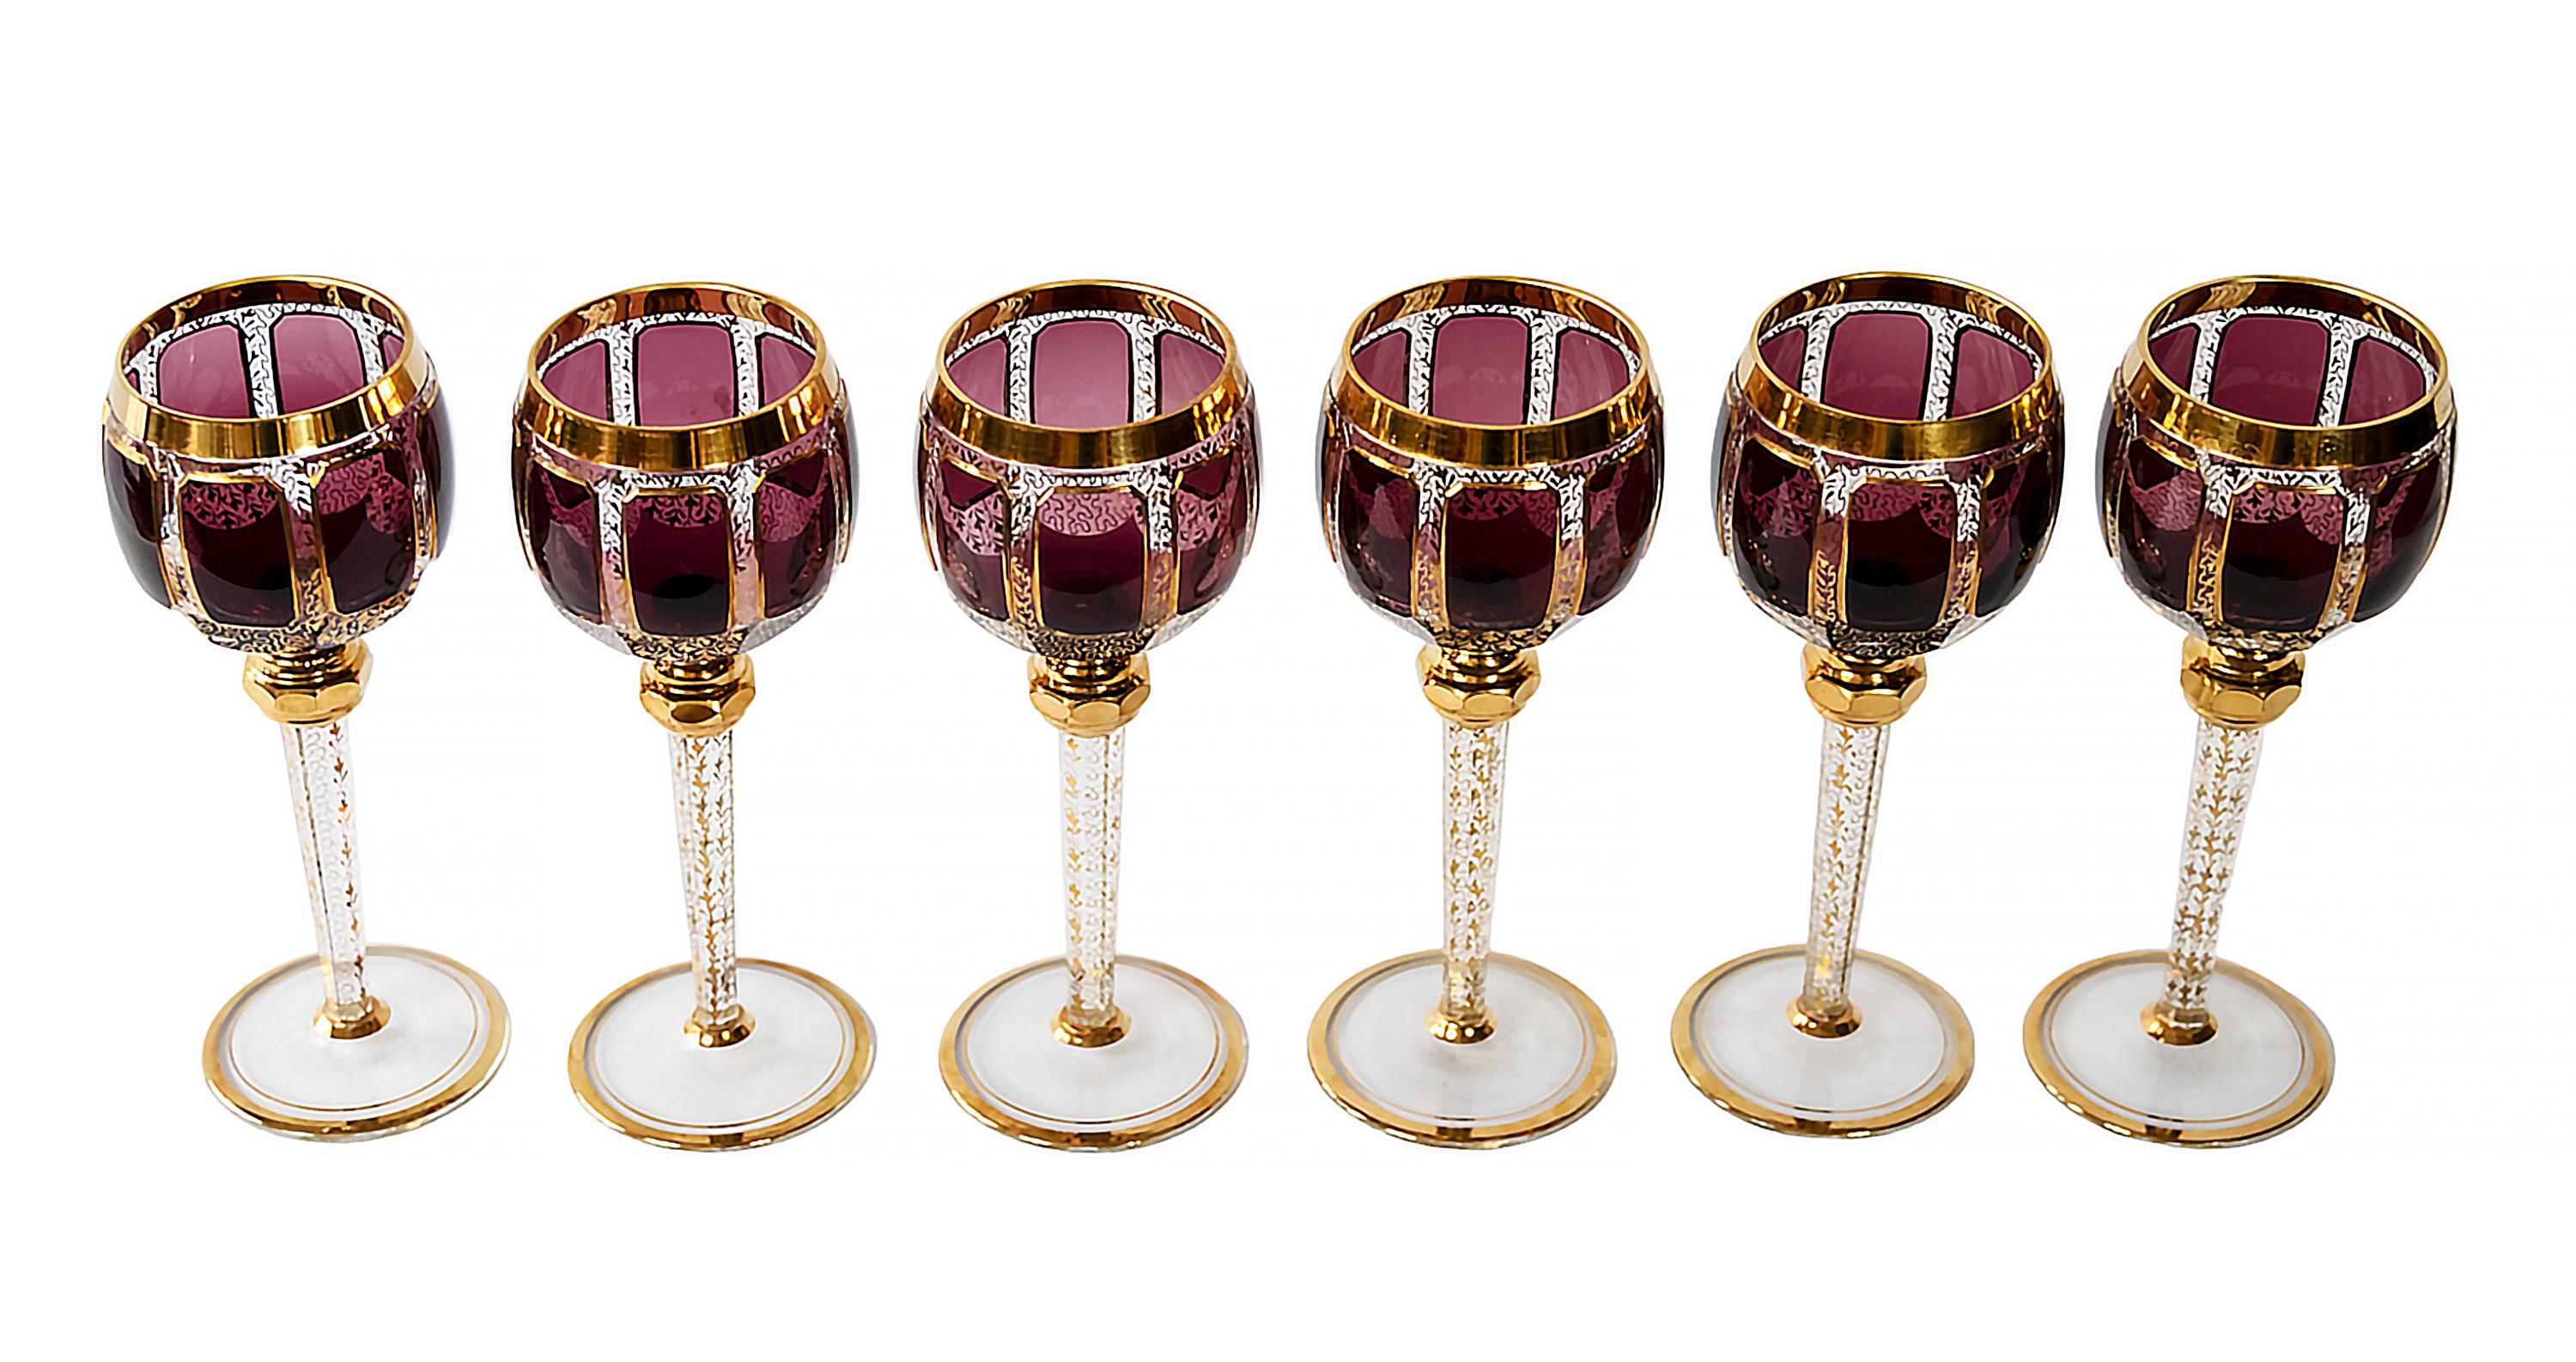 L'ensemble de 6 pièces. Verres à vin de Bohème.
Chaque verre est transparent et décoré d'un verre de couleur améthyste foncé/bordeaux, de garnitures dorées et d'un motif doré à travers le verre.
Très bon/excellent état vintage.

 